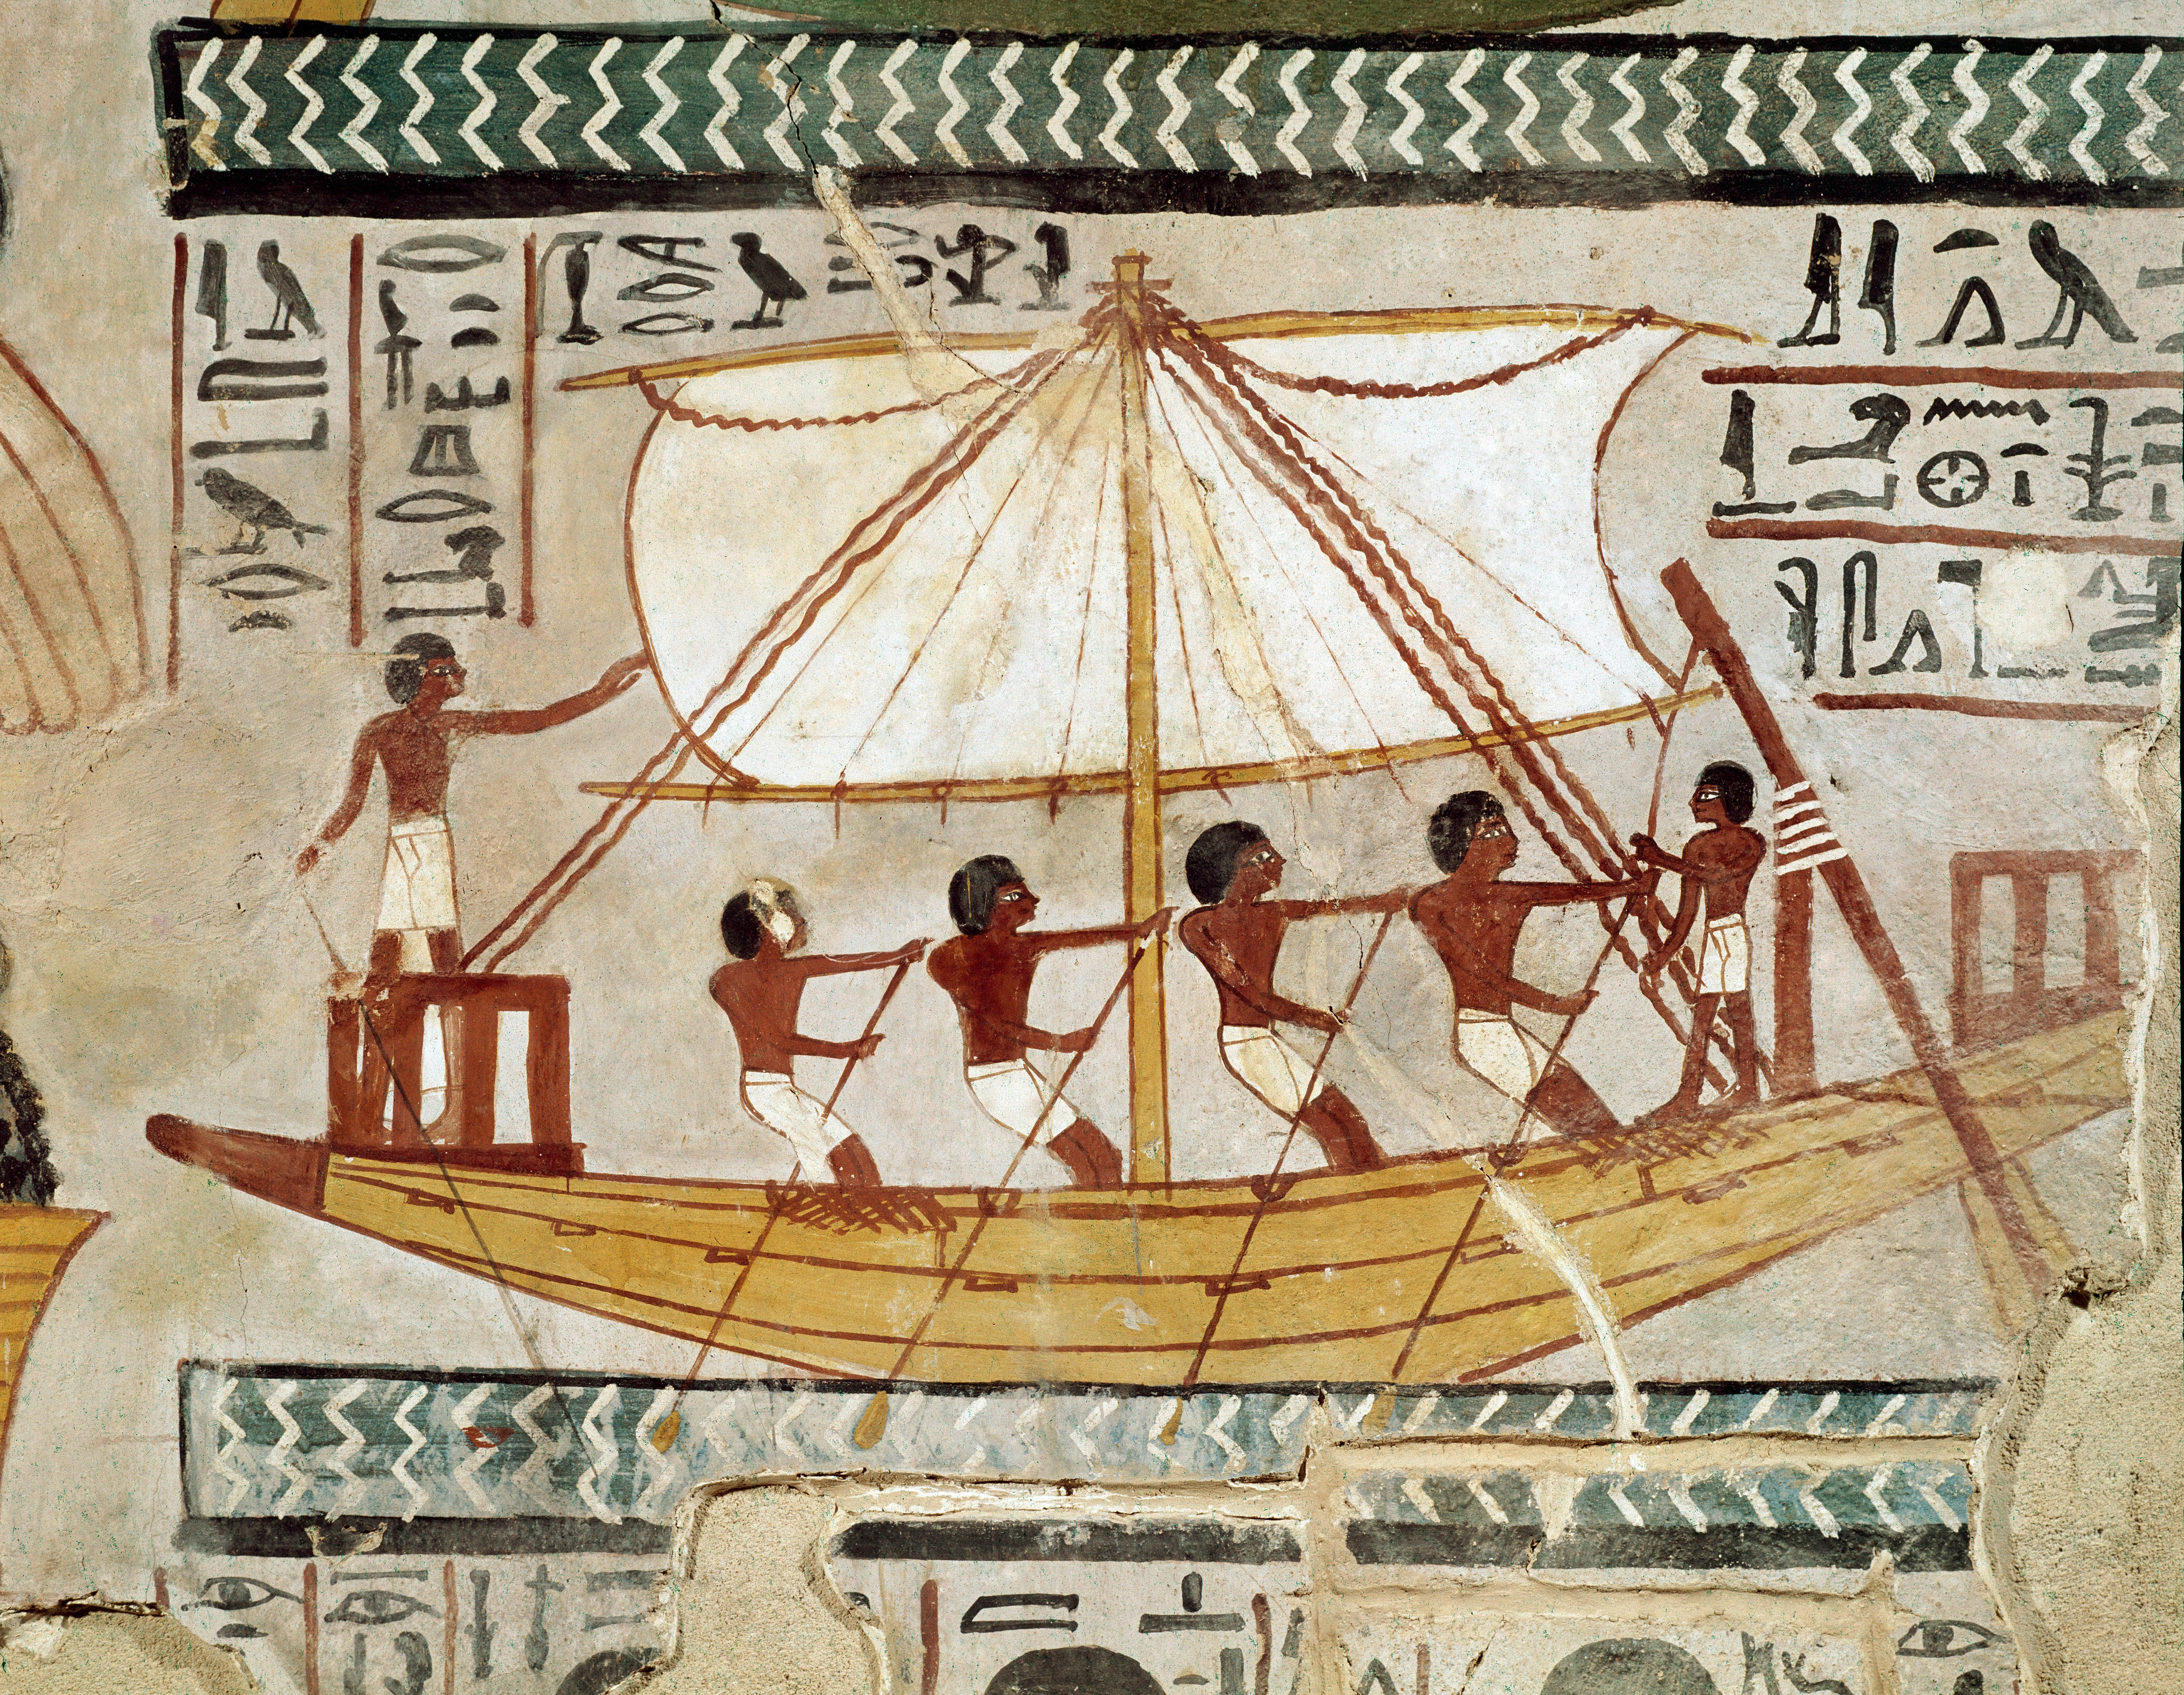 Hérodotosz nem hazudott: a Nílus iszapjából előkerült az általa leírt egyiptomi tengerjáró hajó